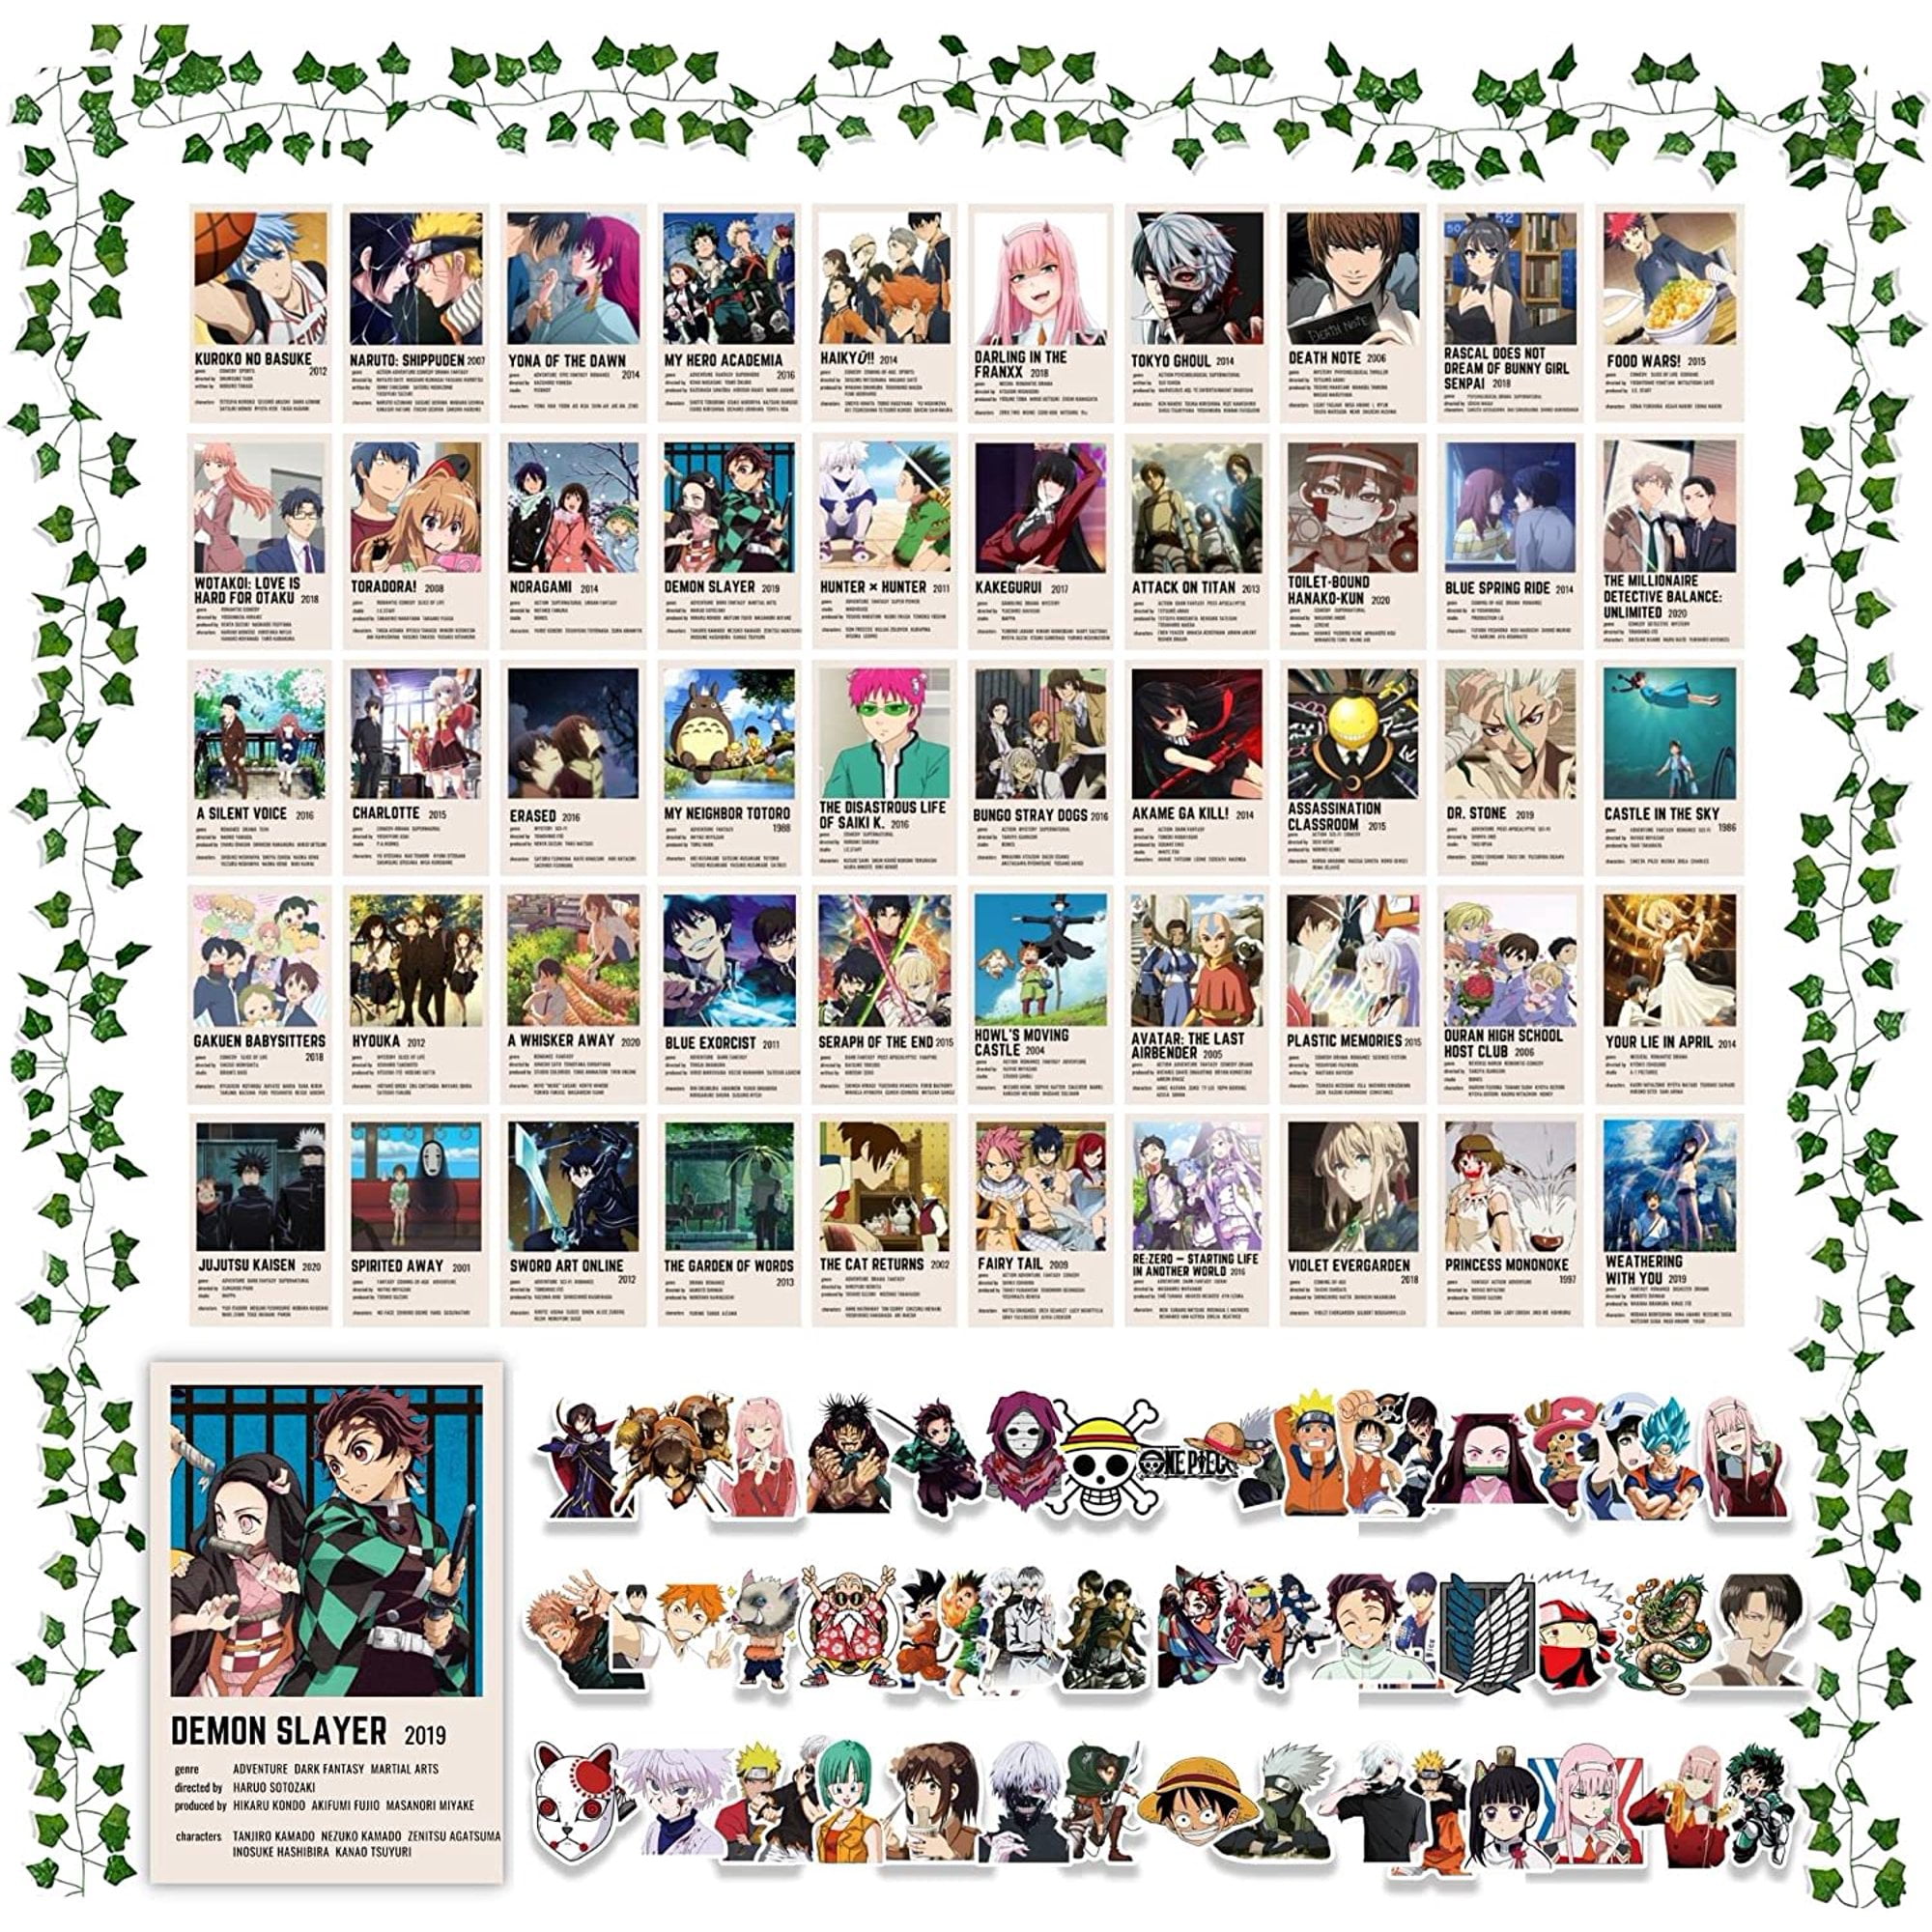 Anime Haikyuu Movie Posters Wall Art Retro Posters for Home Kawaii